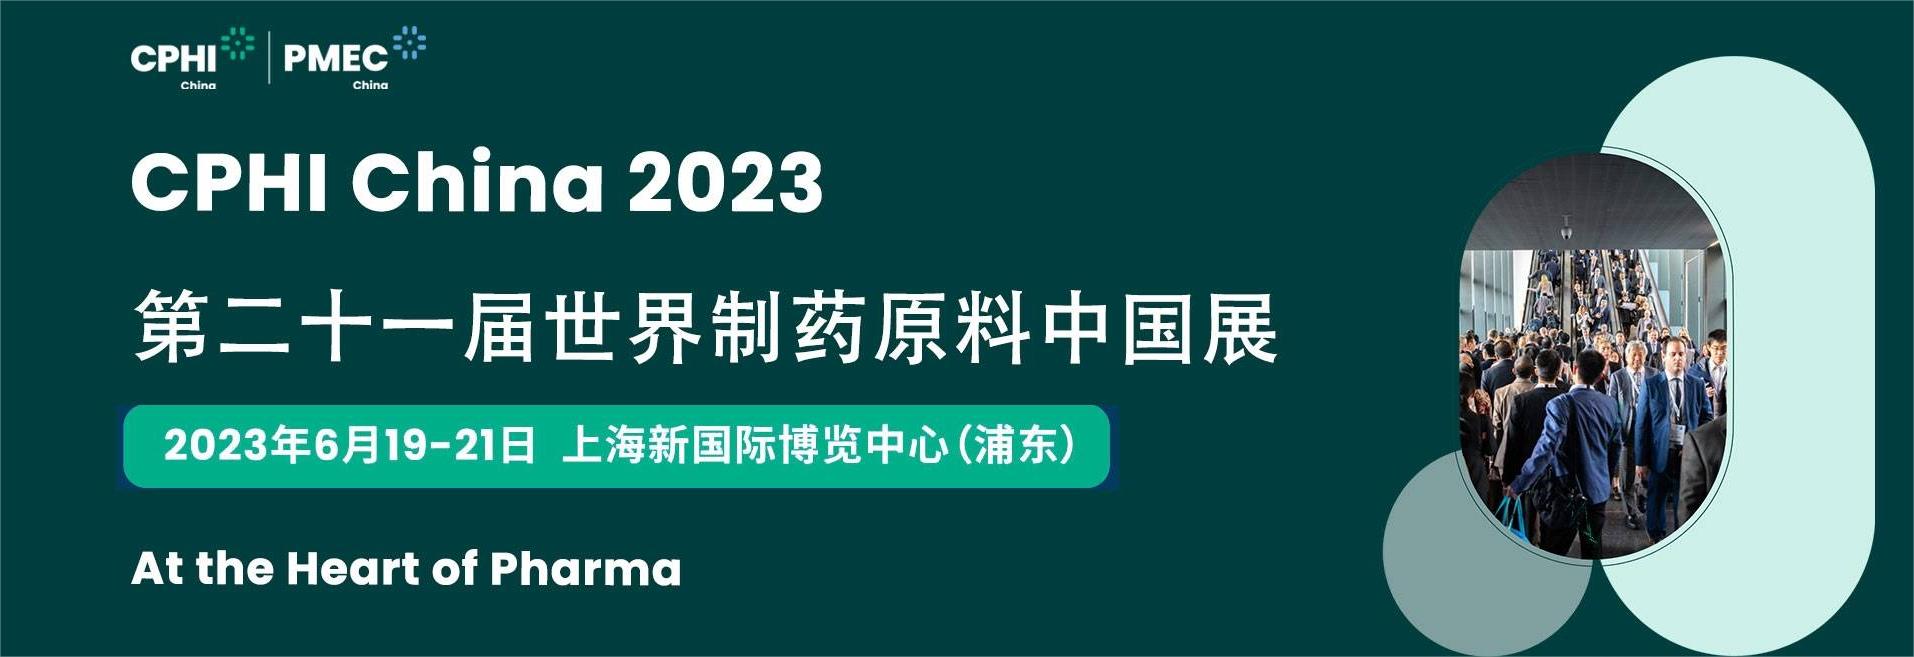 CPHI&PMEC China 2023 Successfully Ends